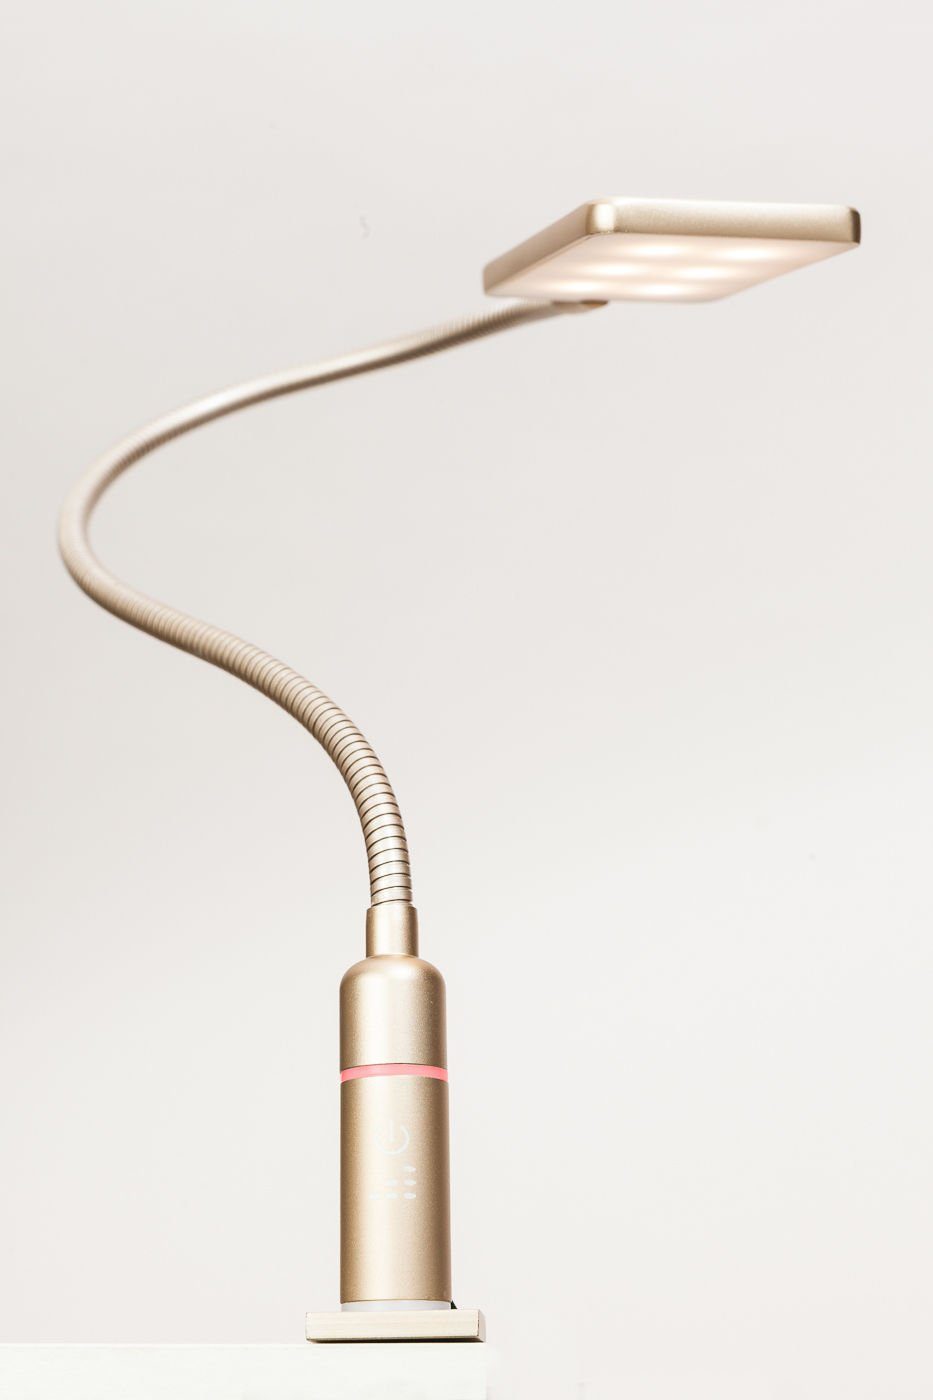 kalb Bettleuchte 4W LED Bettleuchte Leseleuchte Nachttischlampe Leselampe flexibel, 1er Set messing matt, warmweiß